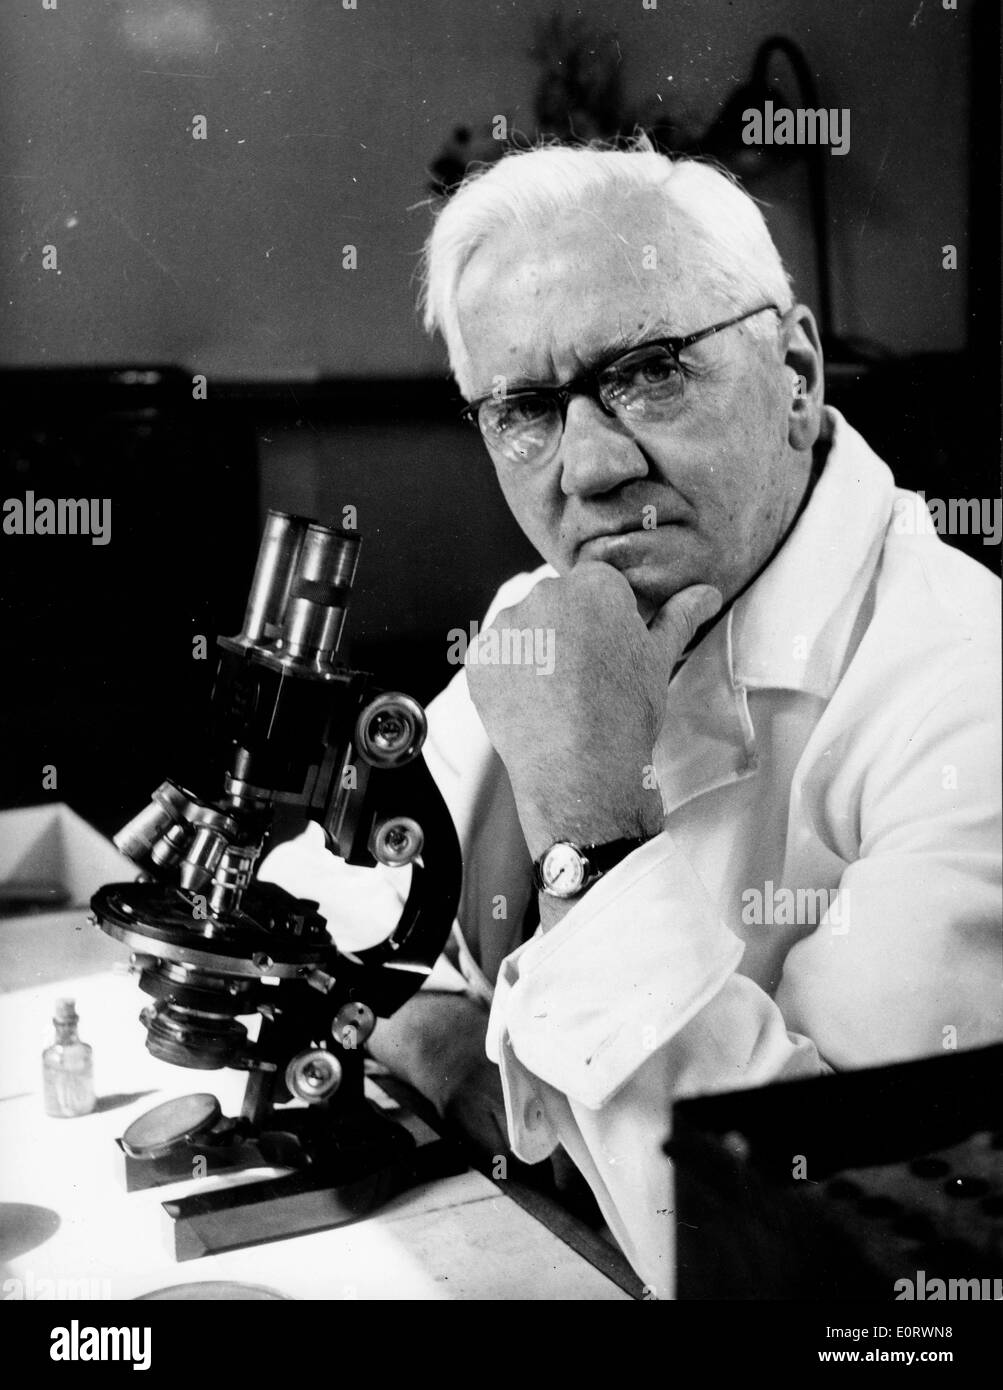 Alexander Fleming biologiste travaille dans son laboratoire Banque D'Images